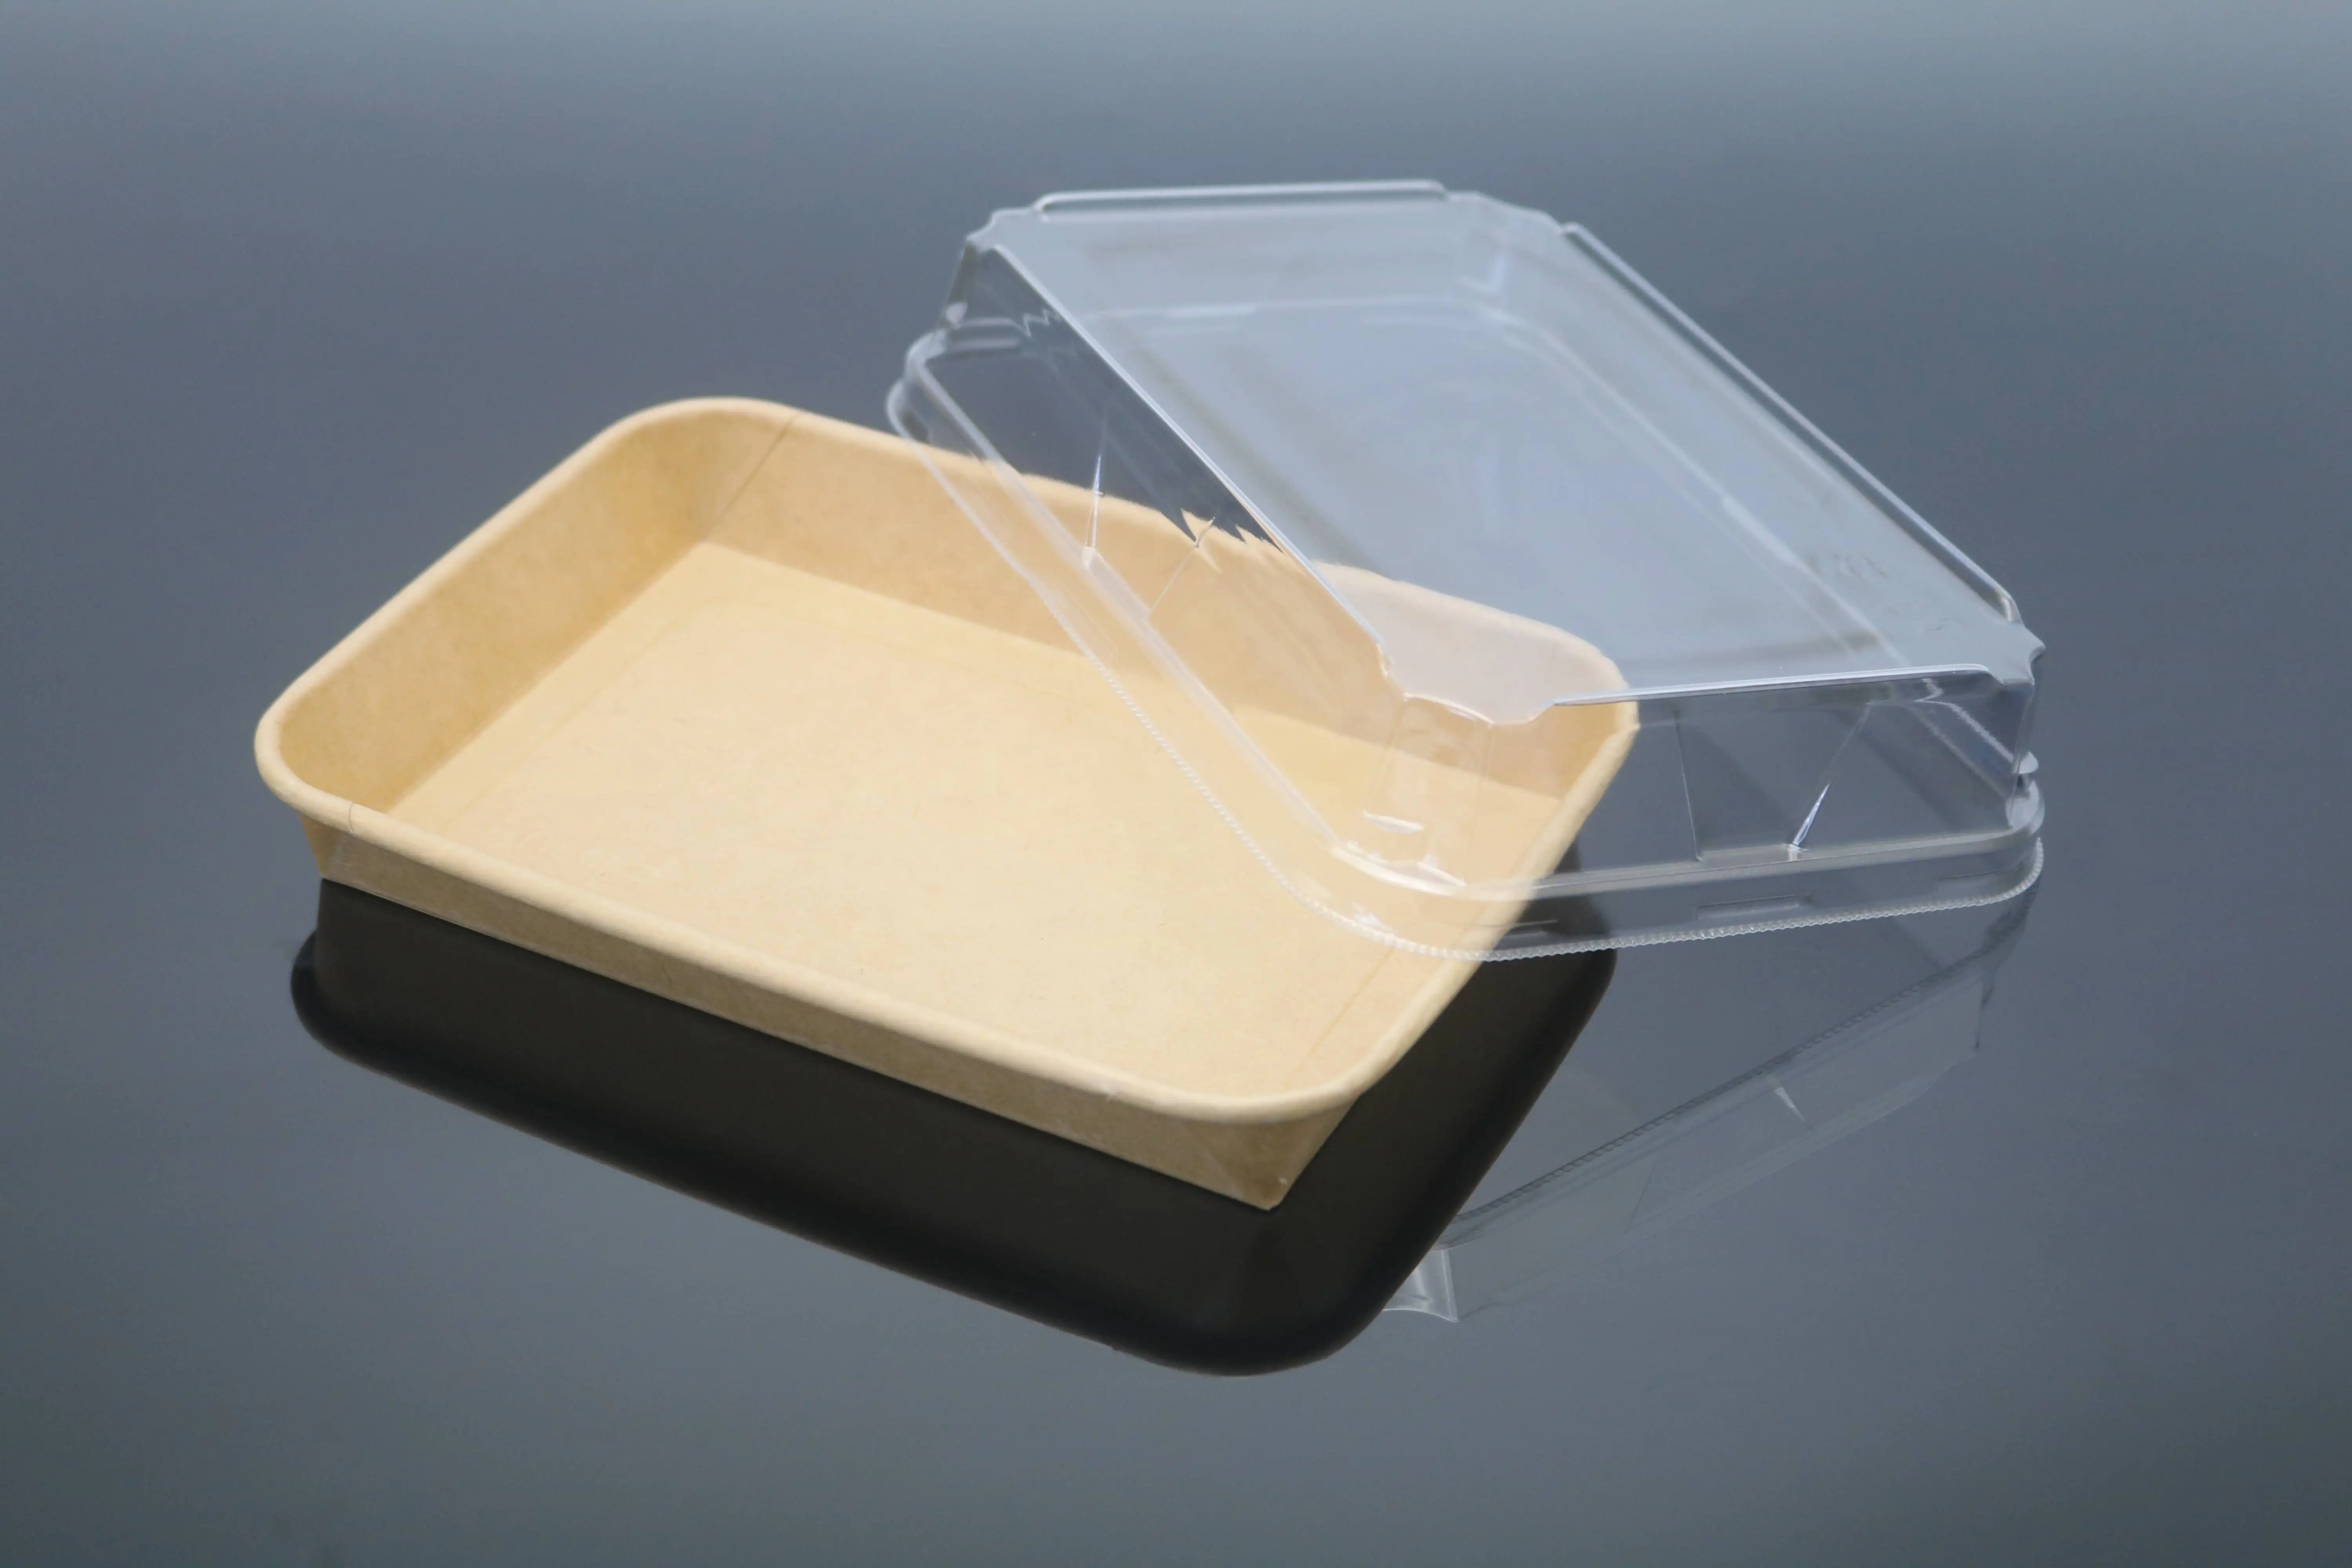 ถาดใส่ซูชิกระดาษคราฟท์หรูหรากล่องอาหารซาชิมิรีไซเคิลได้สำหรับใช้กลับบ้าน